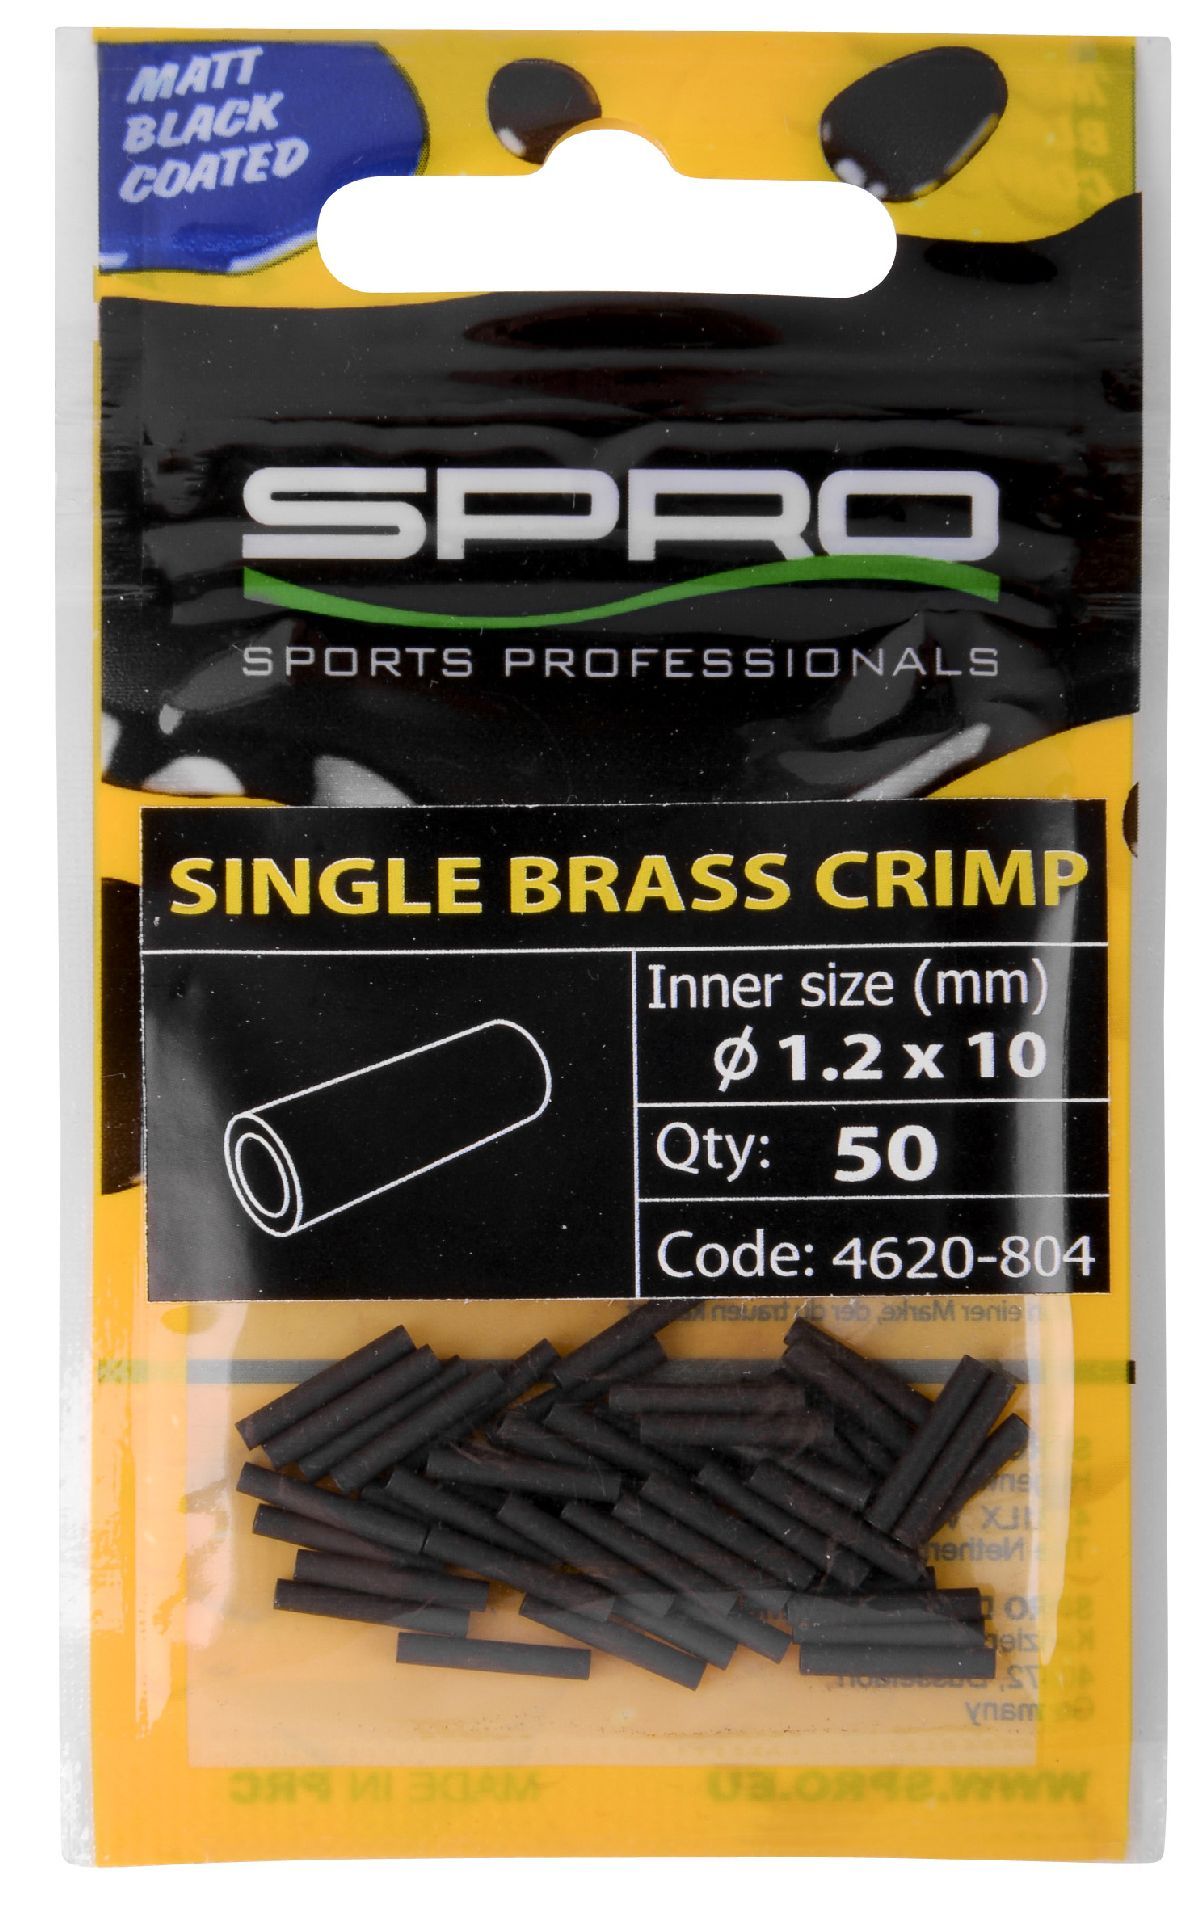 Spro Mb Single Brass Crimp 10mm 0.8mm 50St.